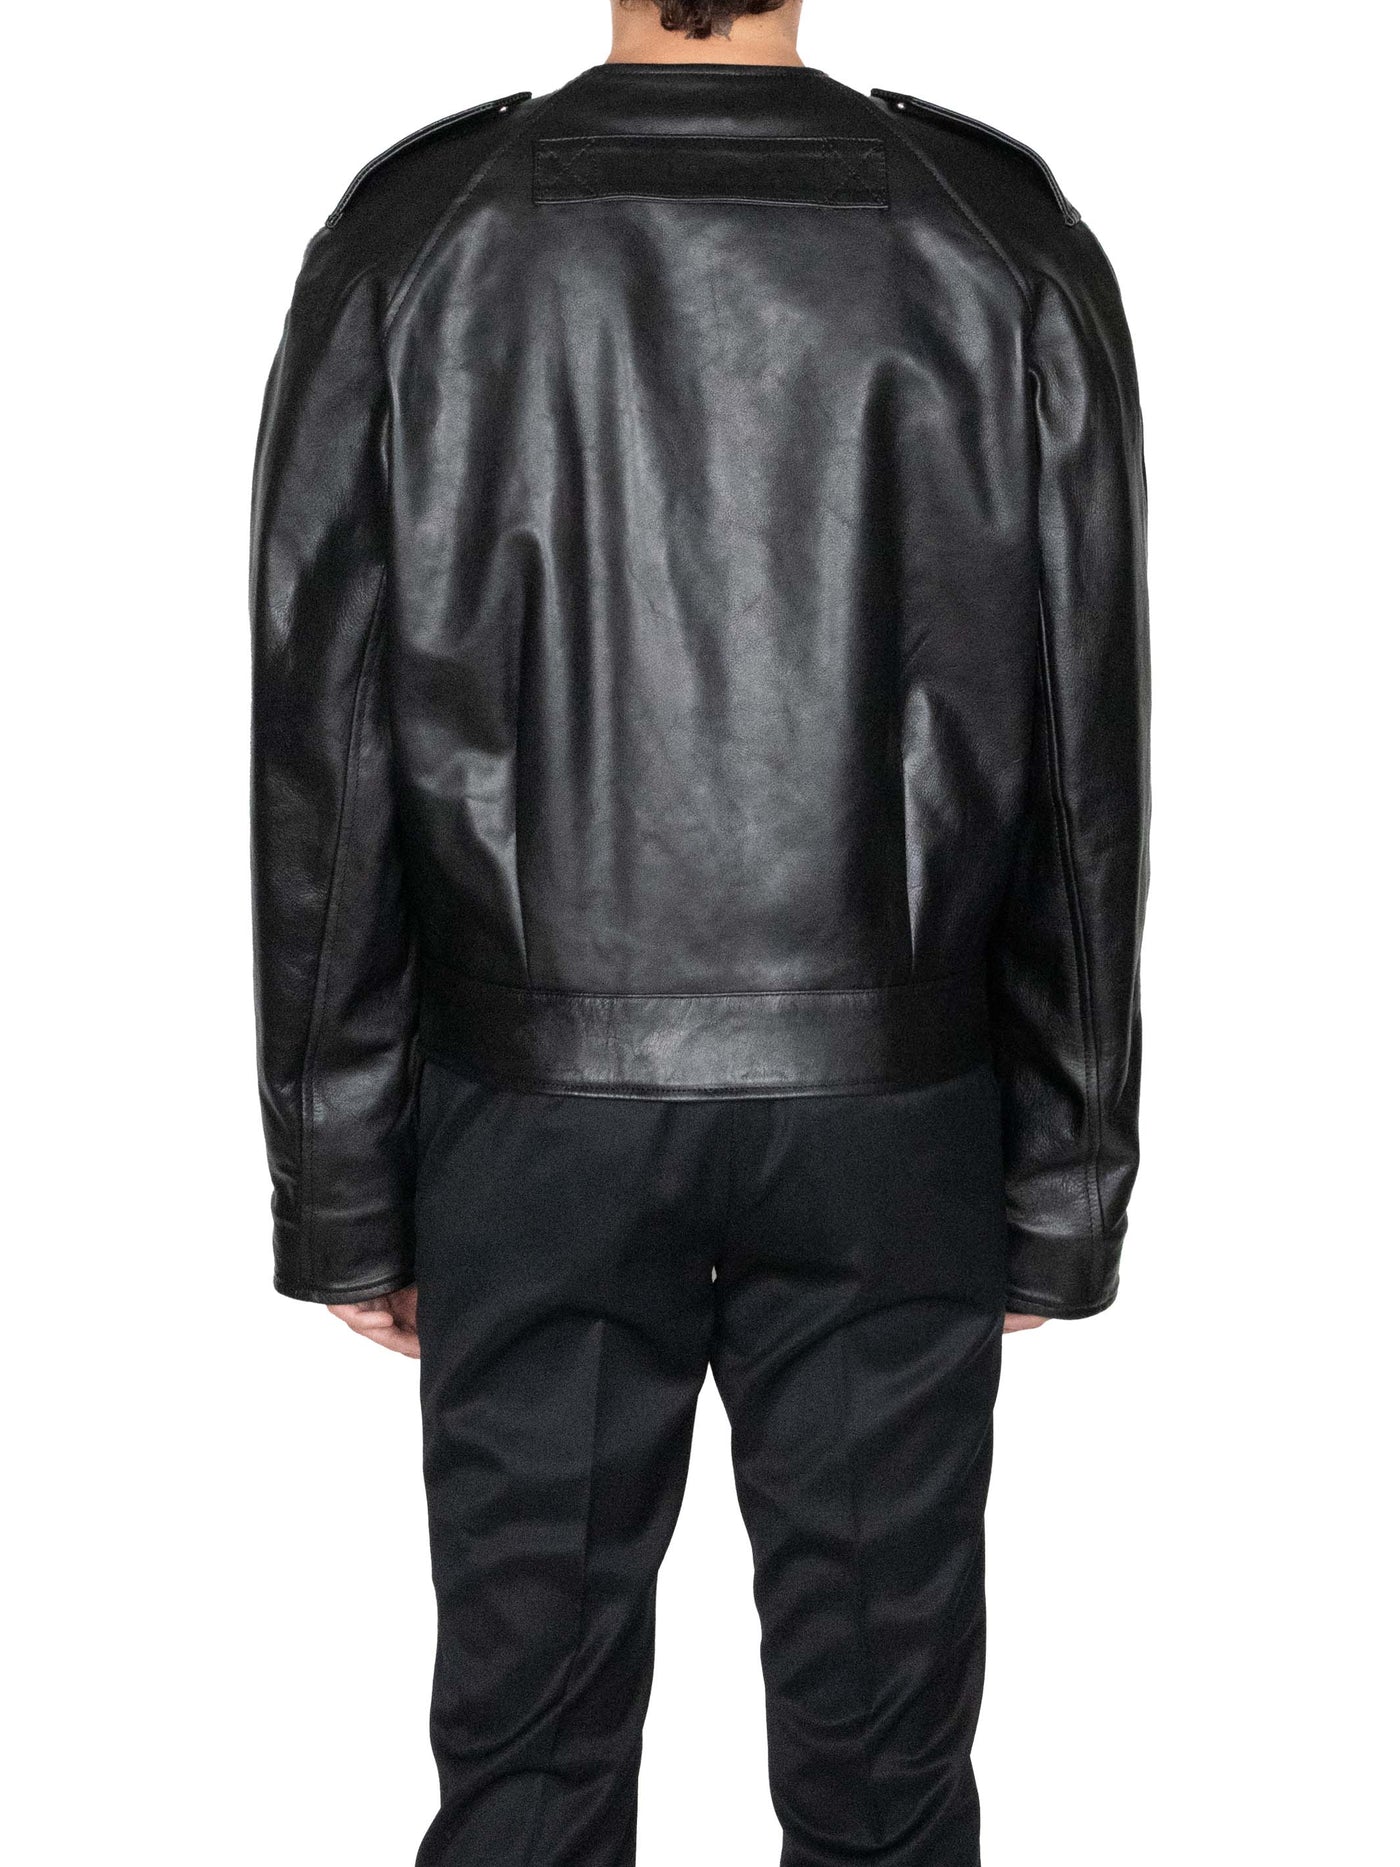 Leather flight jacket